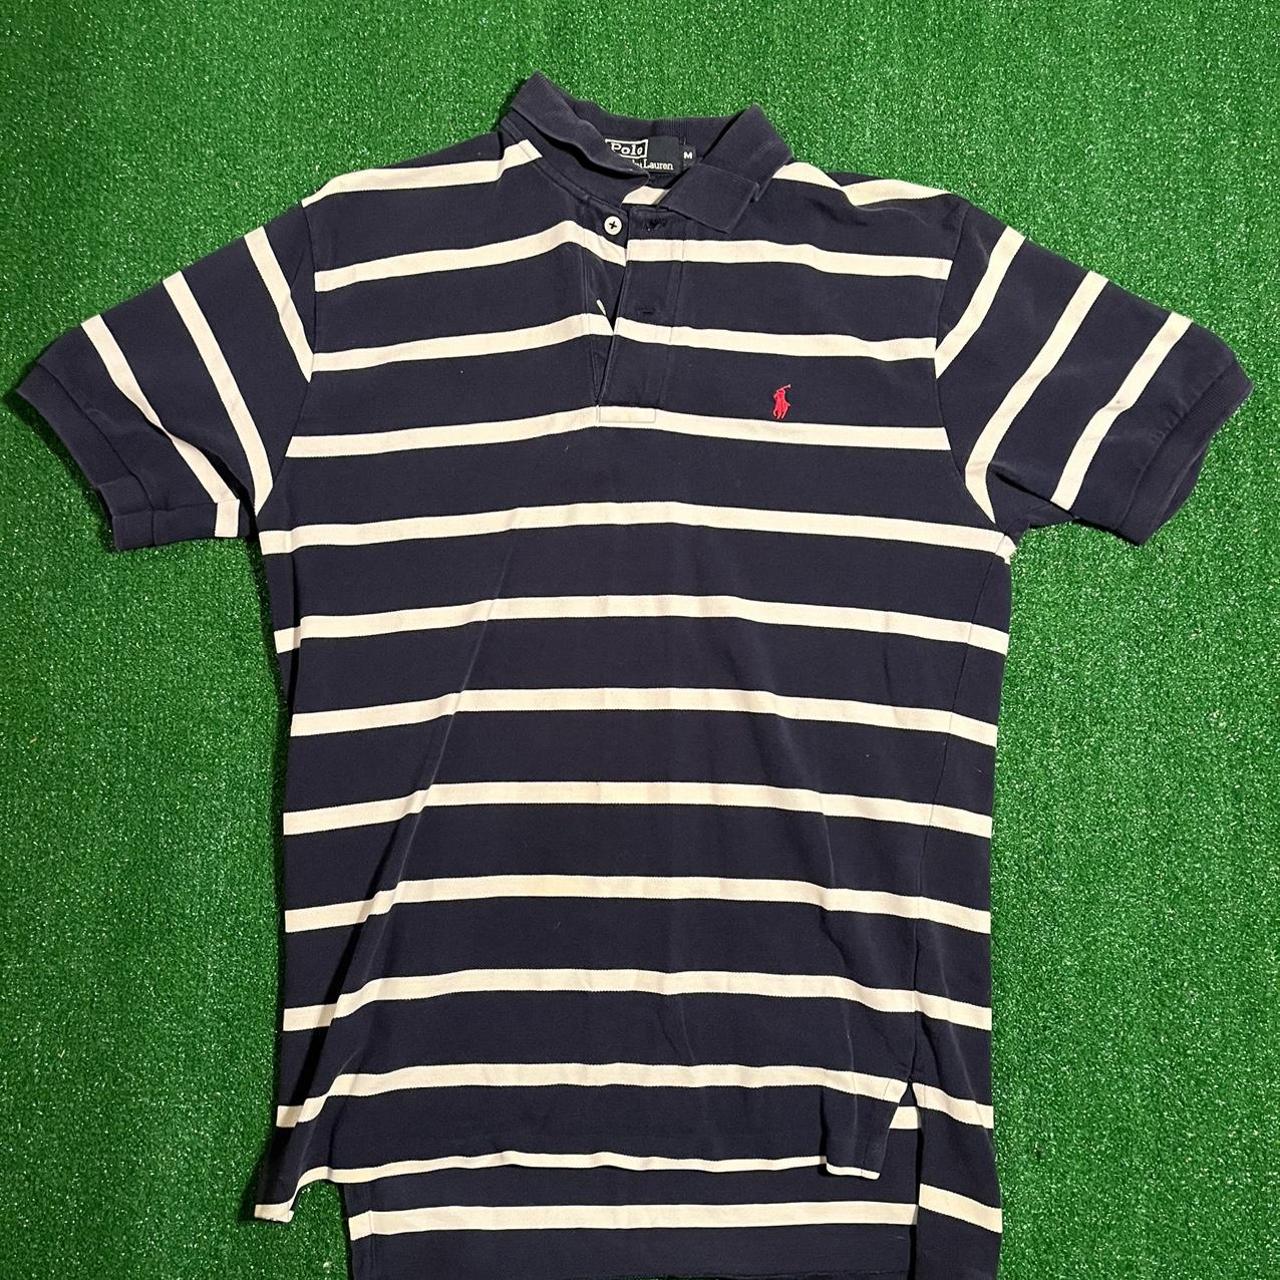 Polo ralph lauren striped polo shirt Size medium... - Depop